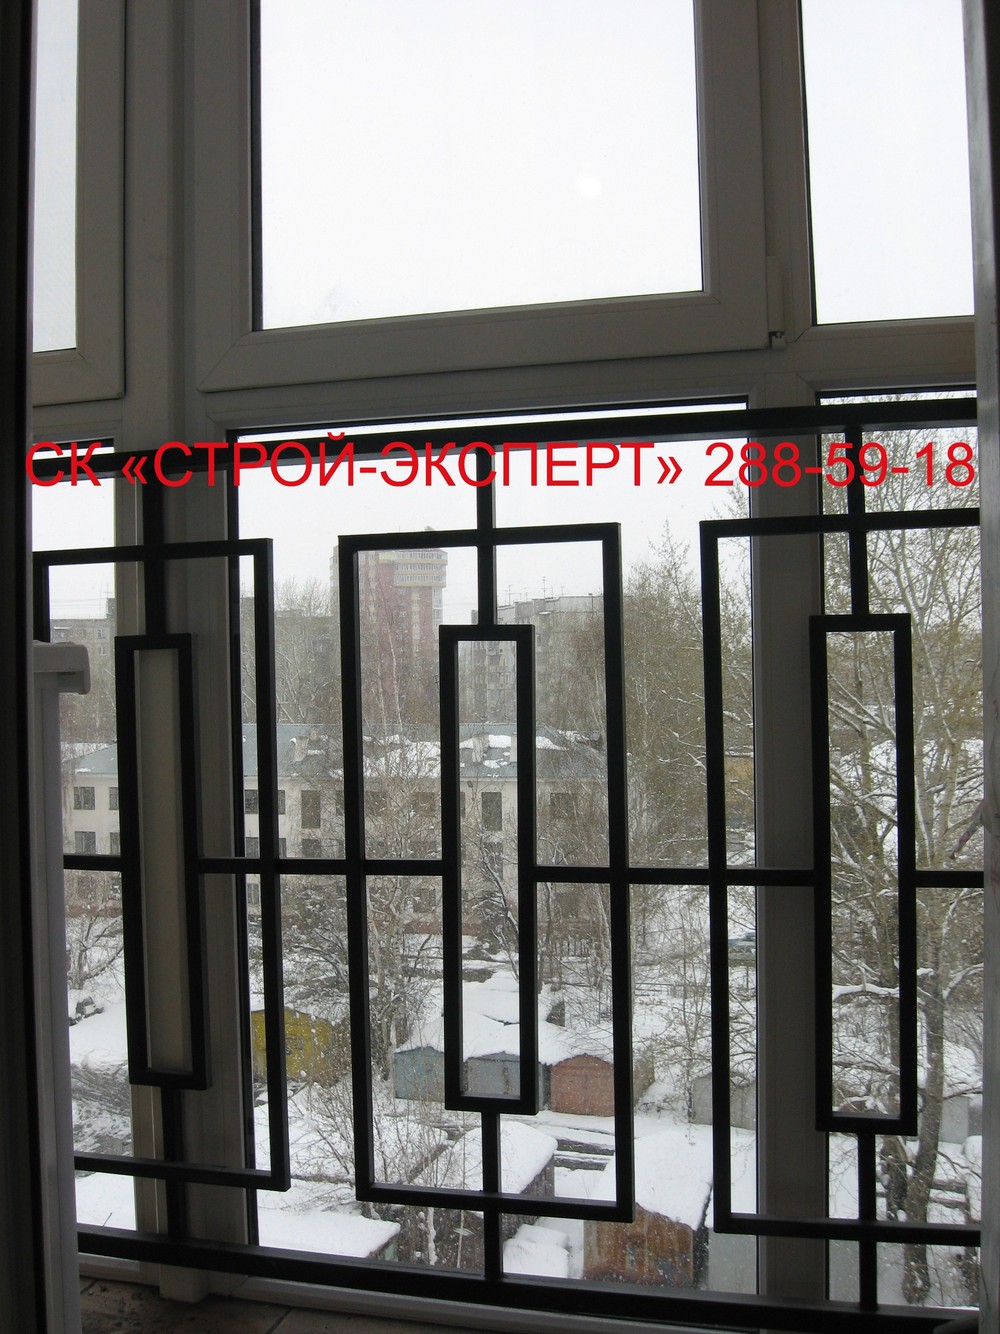 ФОТО-ГАЛЕРЕЯ - Решетки фото - Раздвижные решетки на окна Пермь